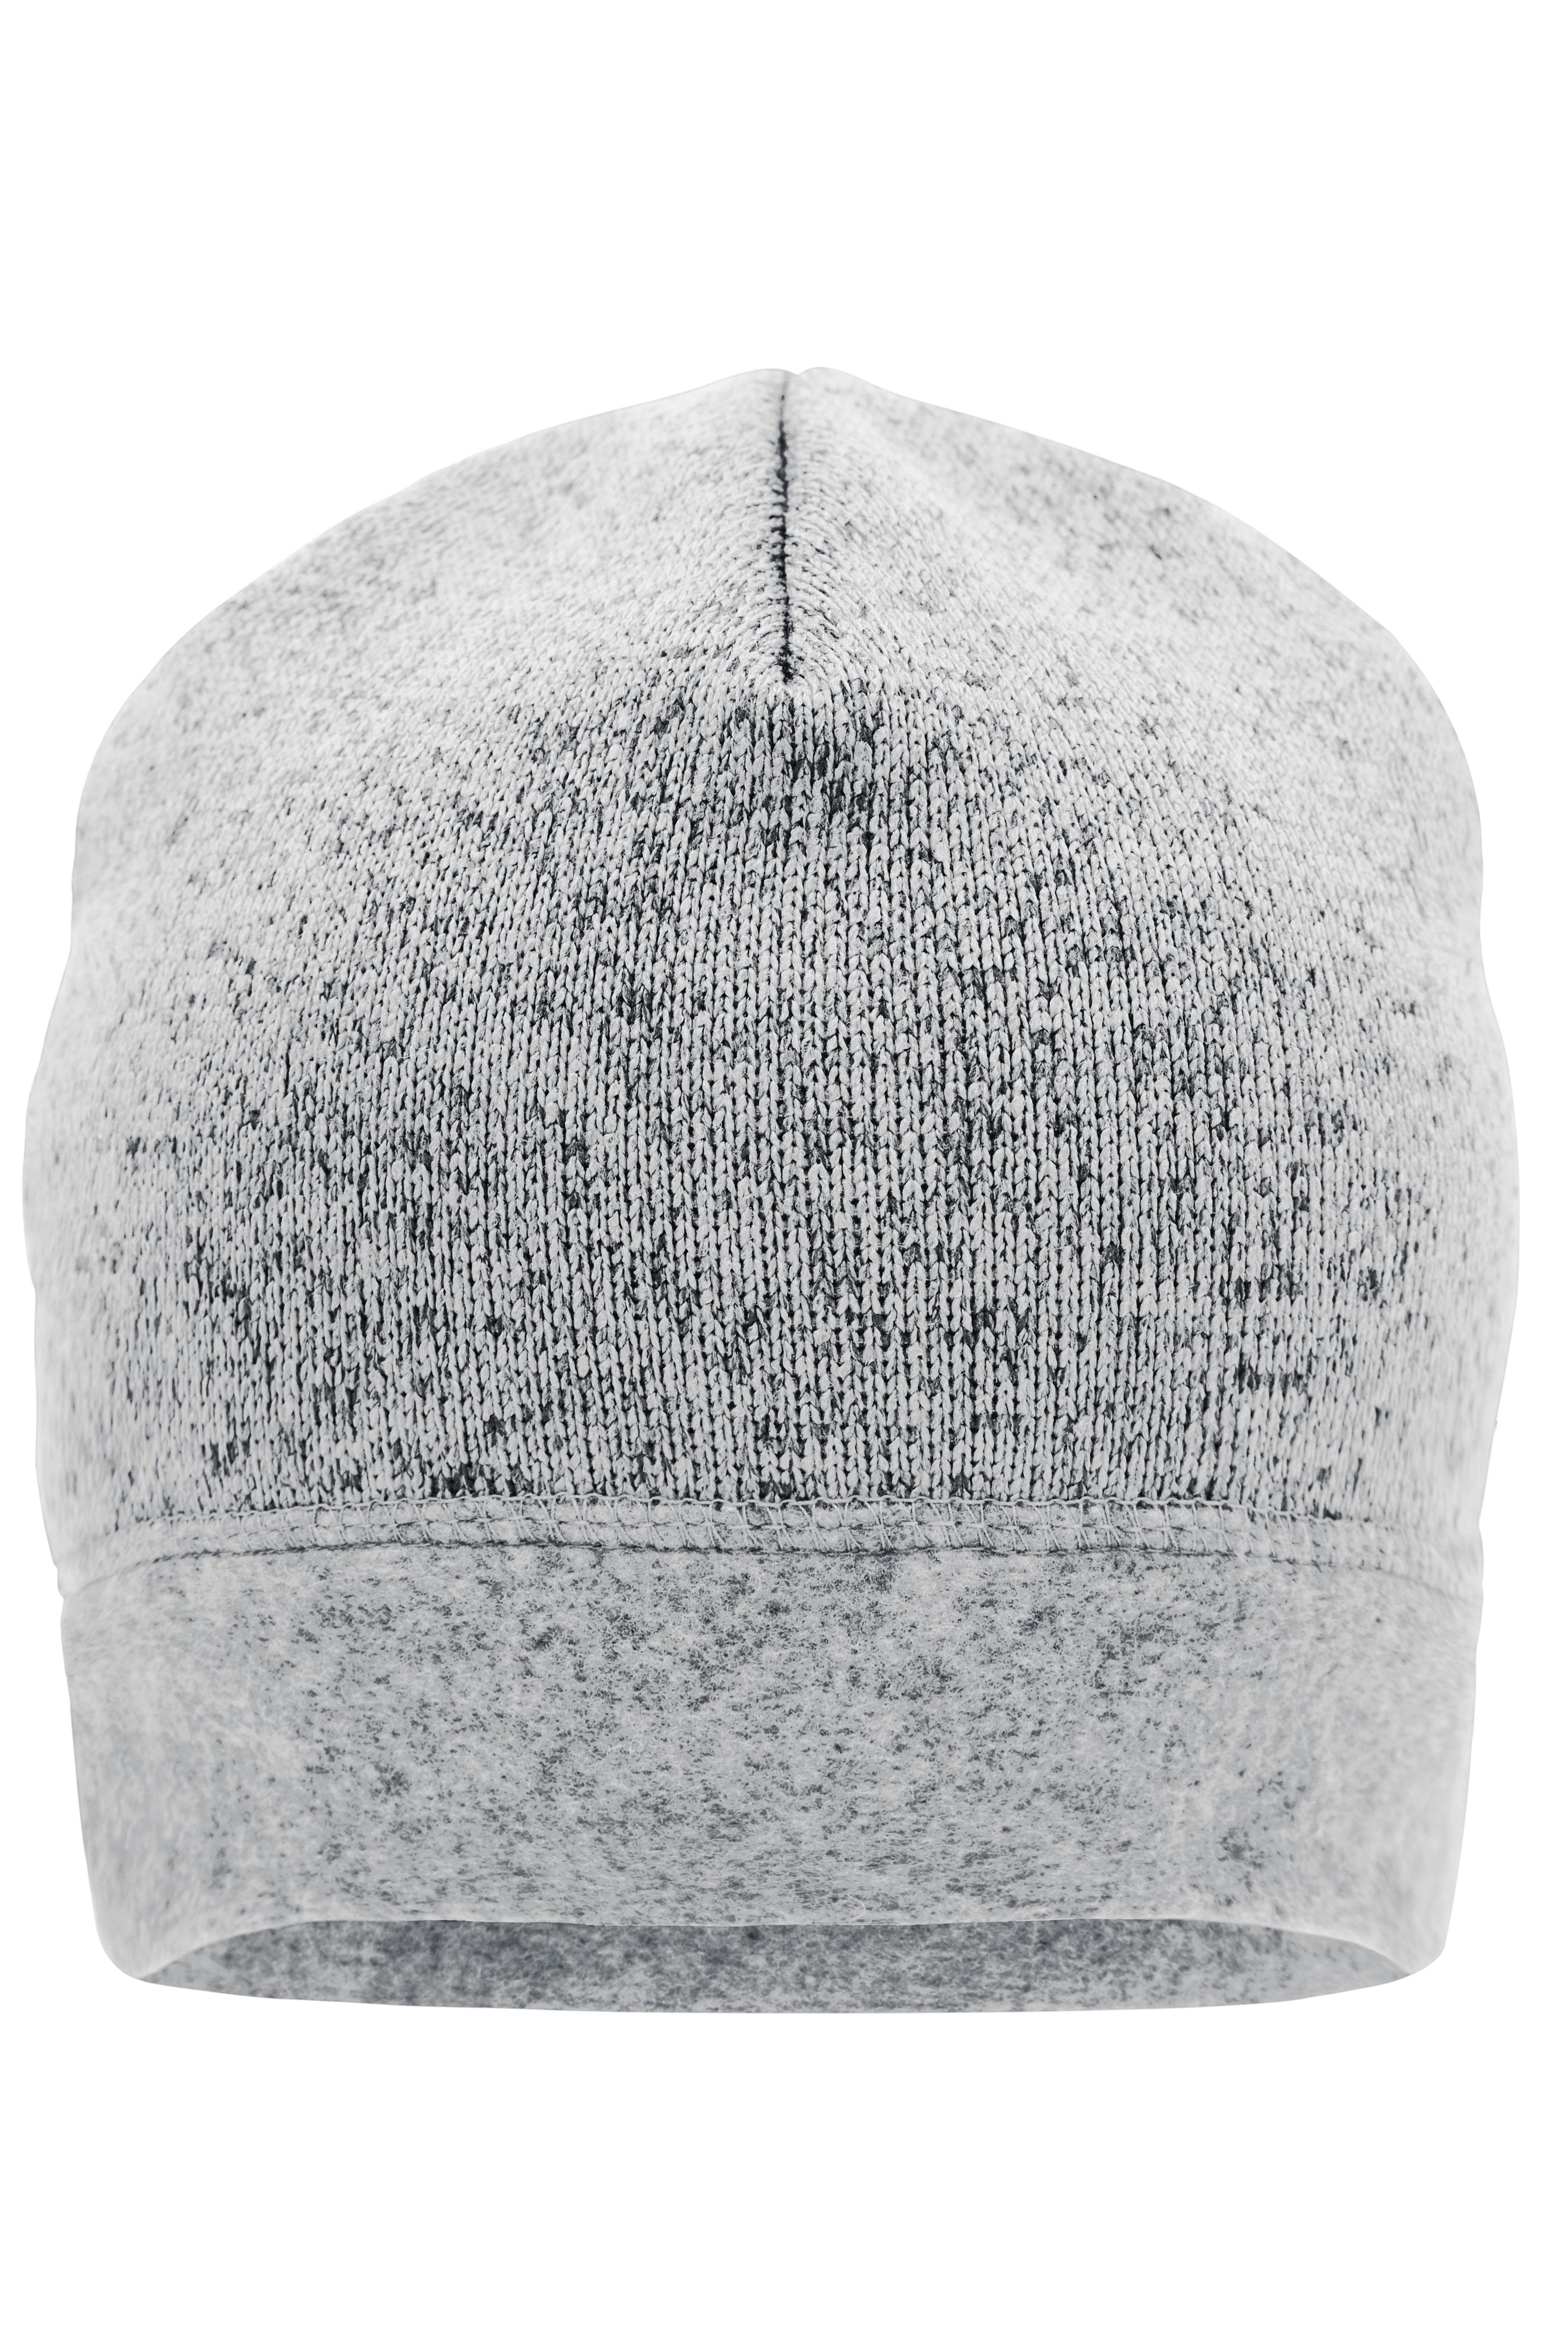 DAMEN Accessoires Hut und Mütze Weiß NoName Hut und Mütze Rabatt 98 % Weiß Einheitlich 